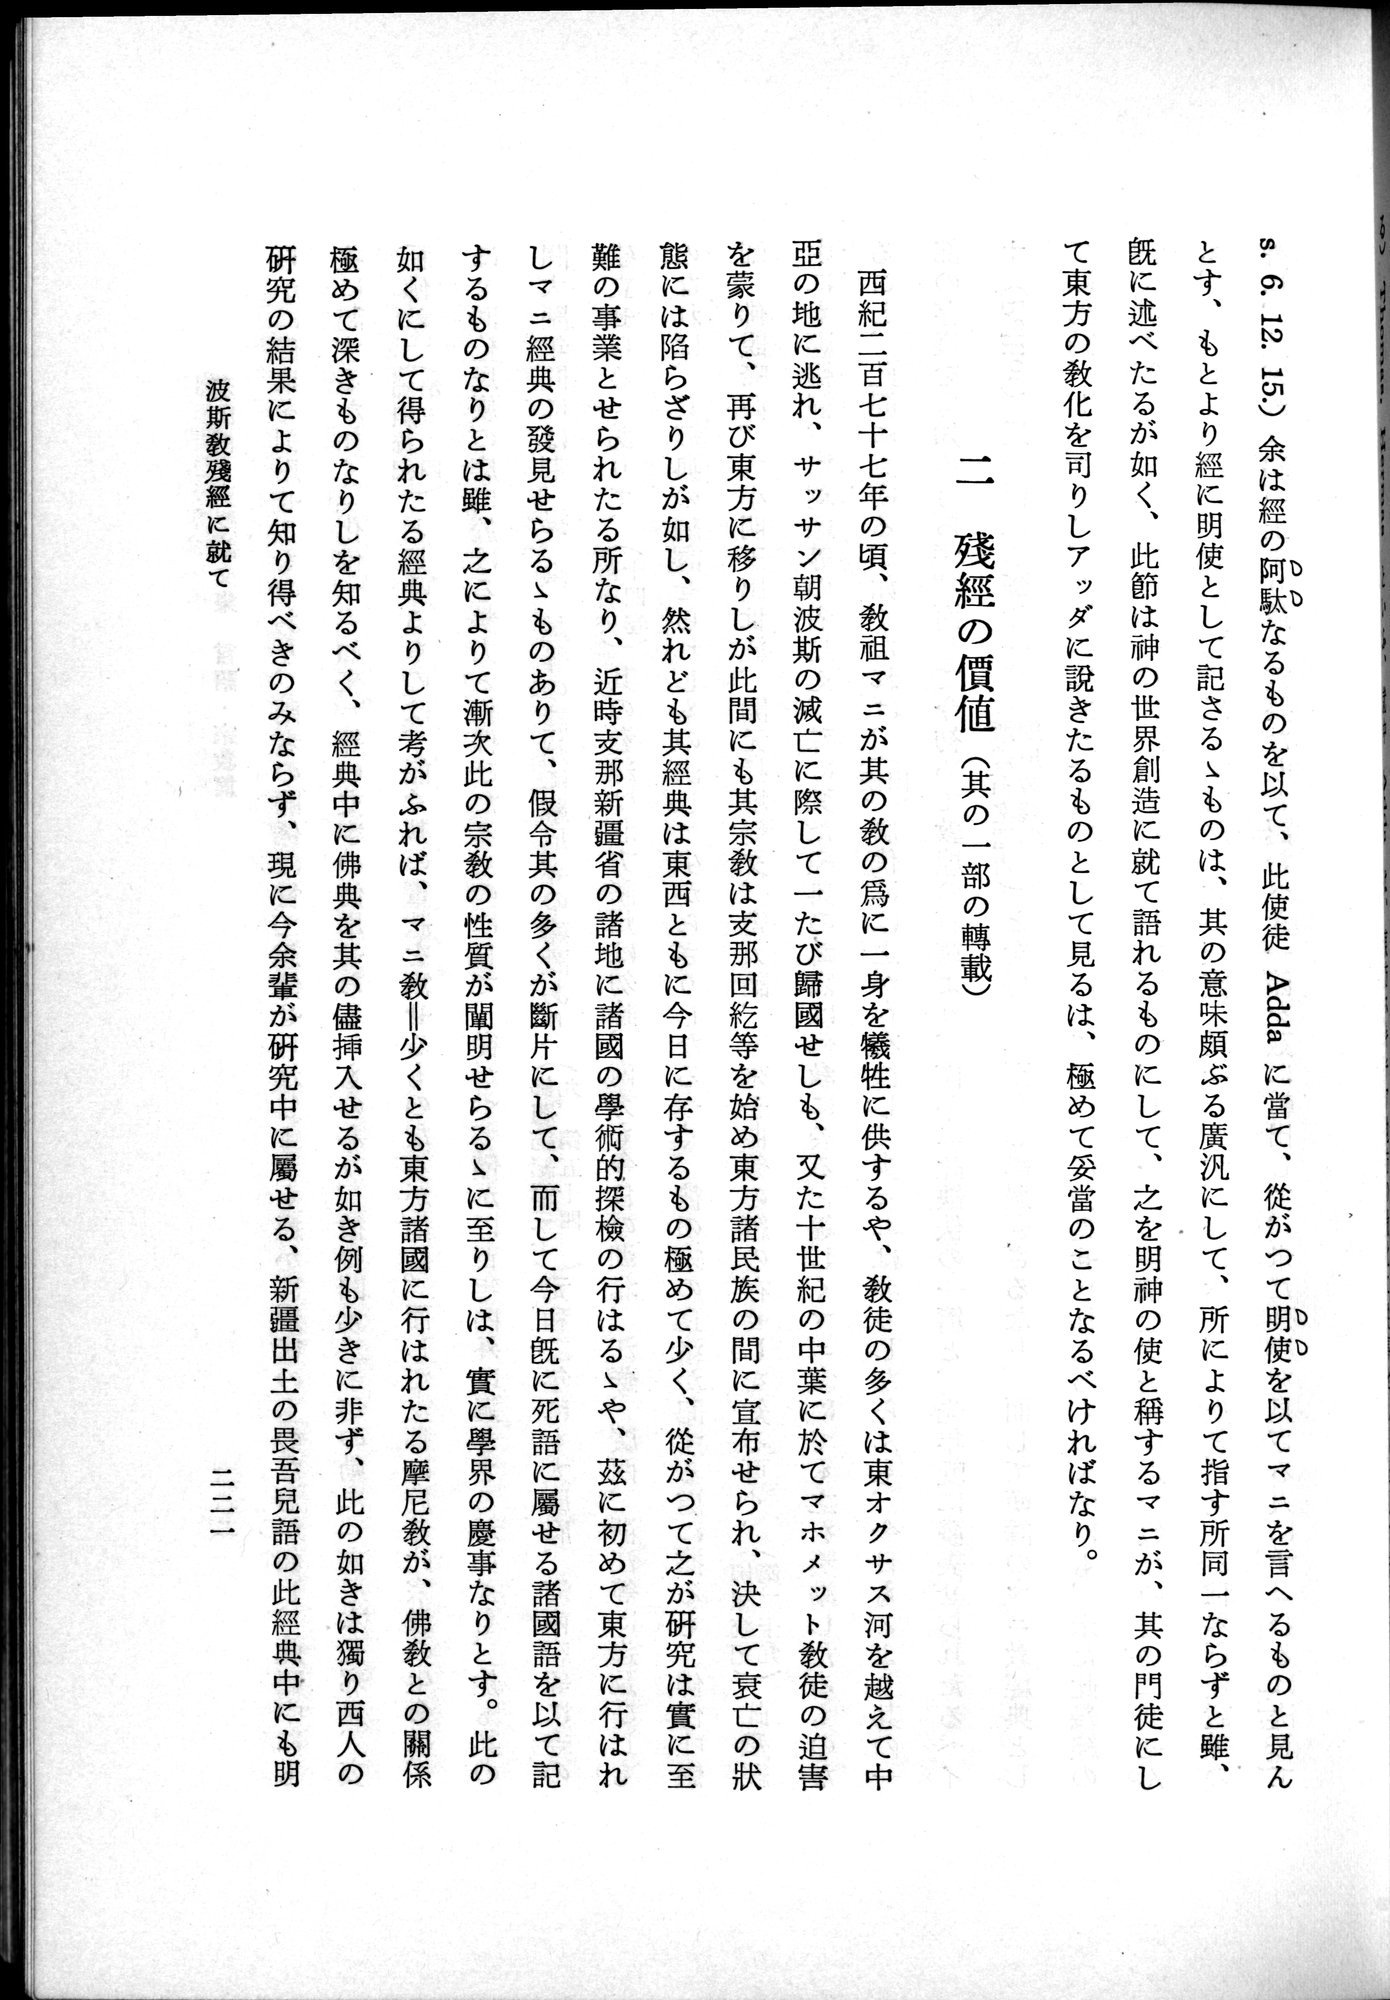 羽田博士史学論文集 : vol.2 / Page 283 (Grayscale High Resolution Image)